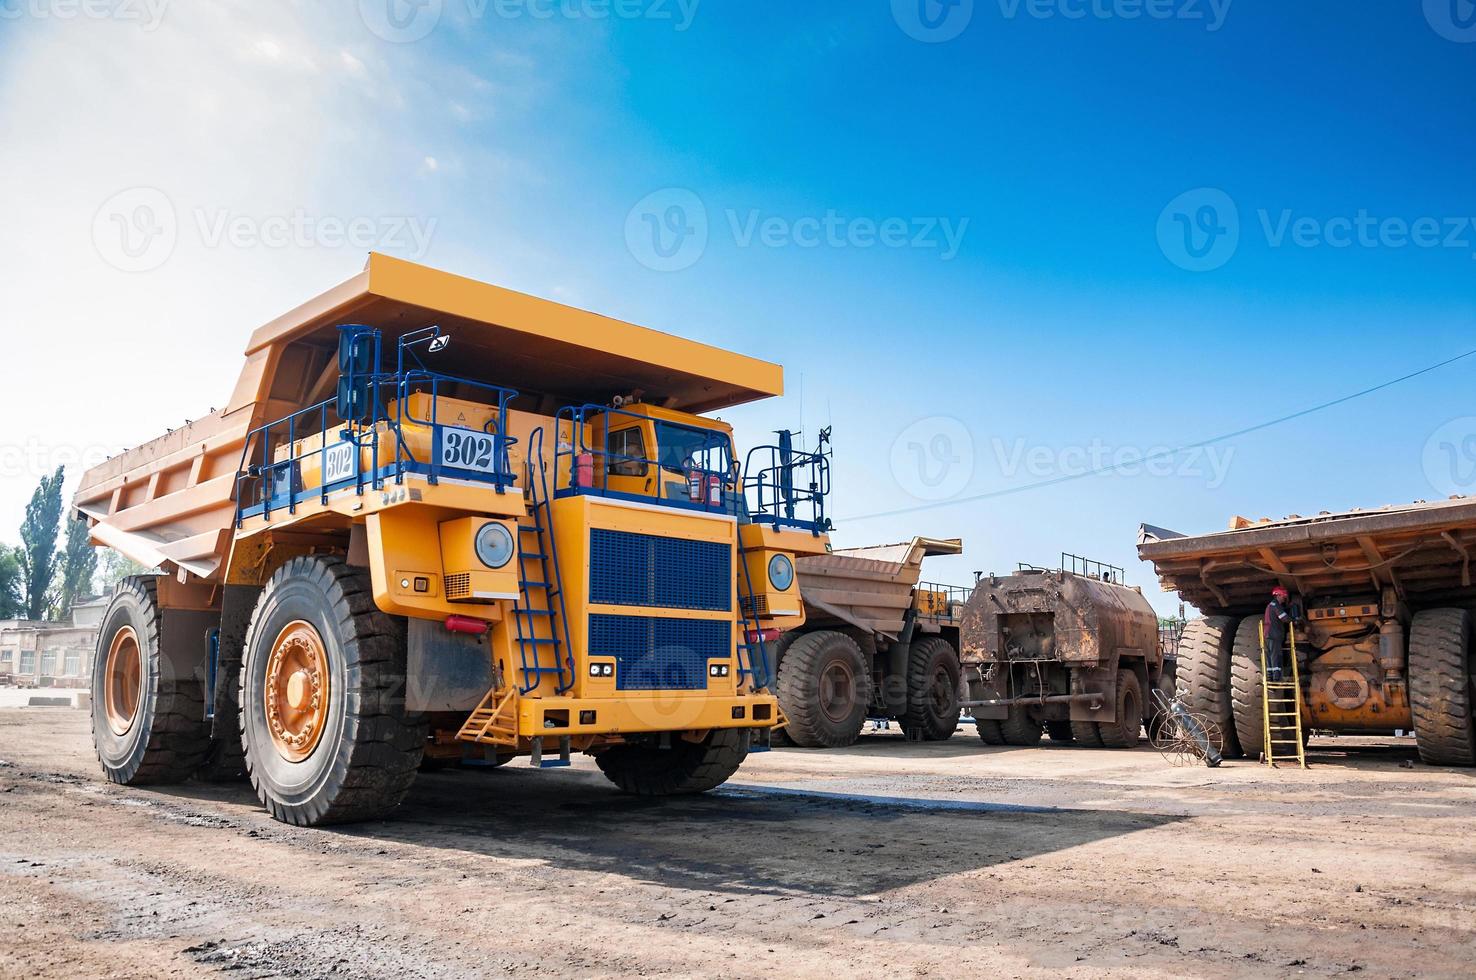 cantera amarillo tugurio camión unidades solo industrial zona a soleado día foto